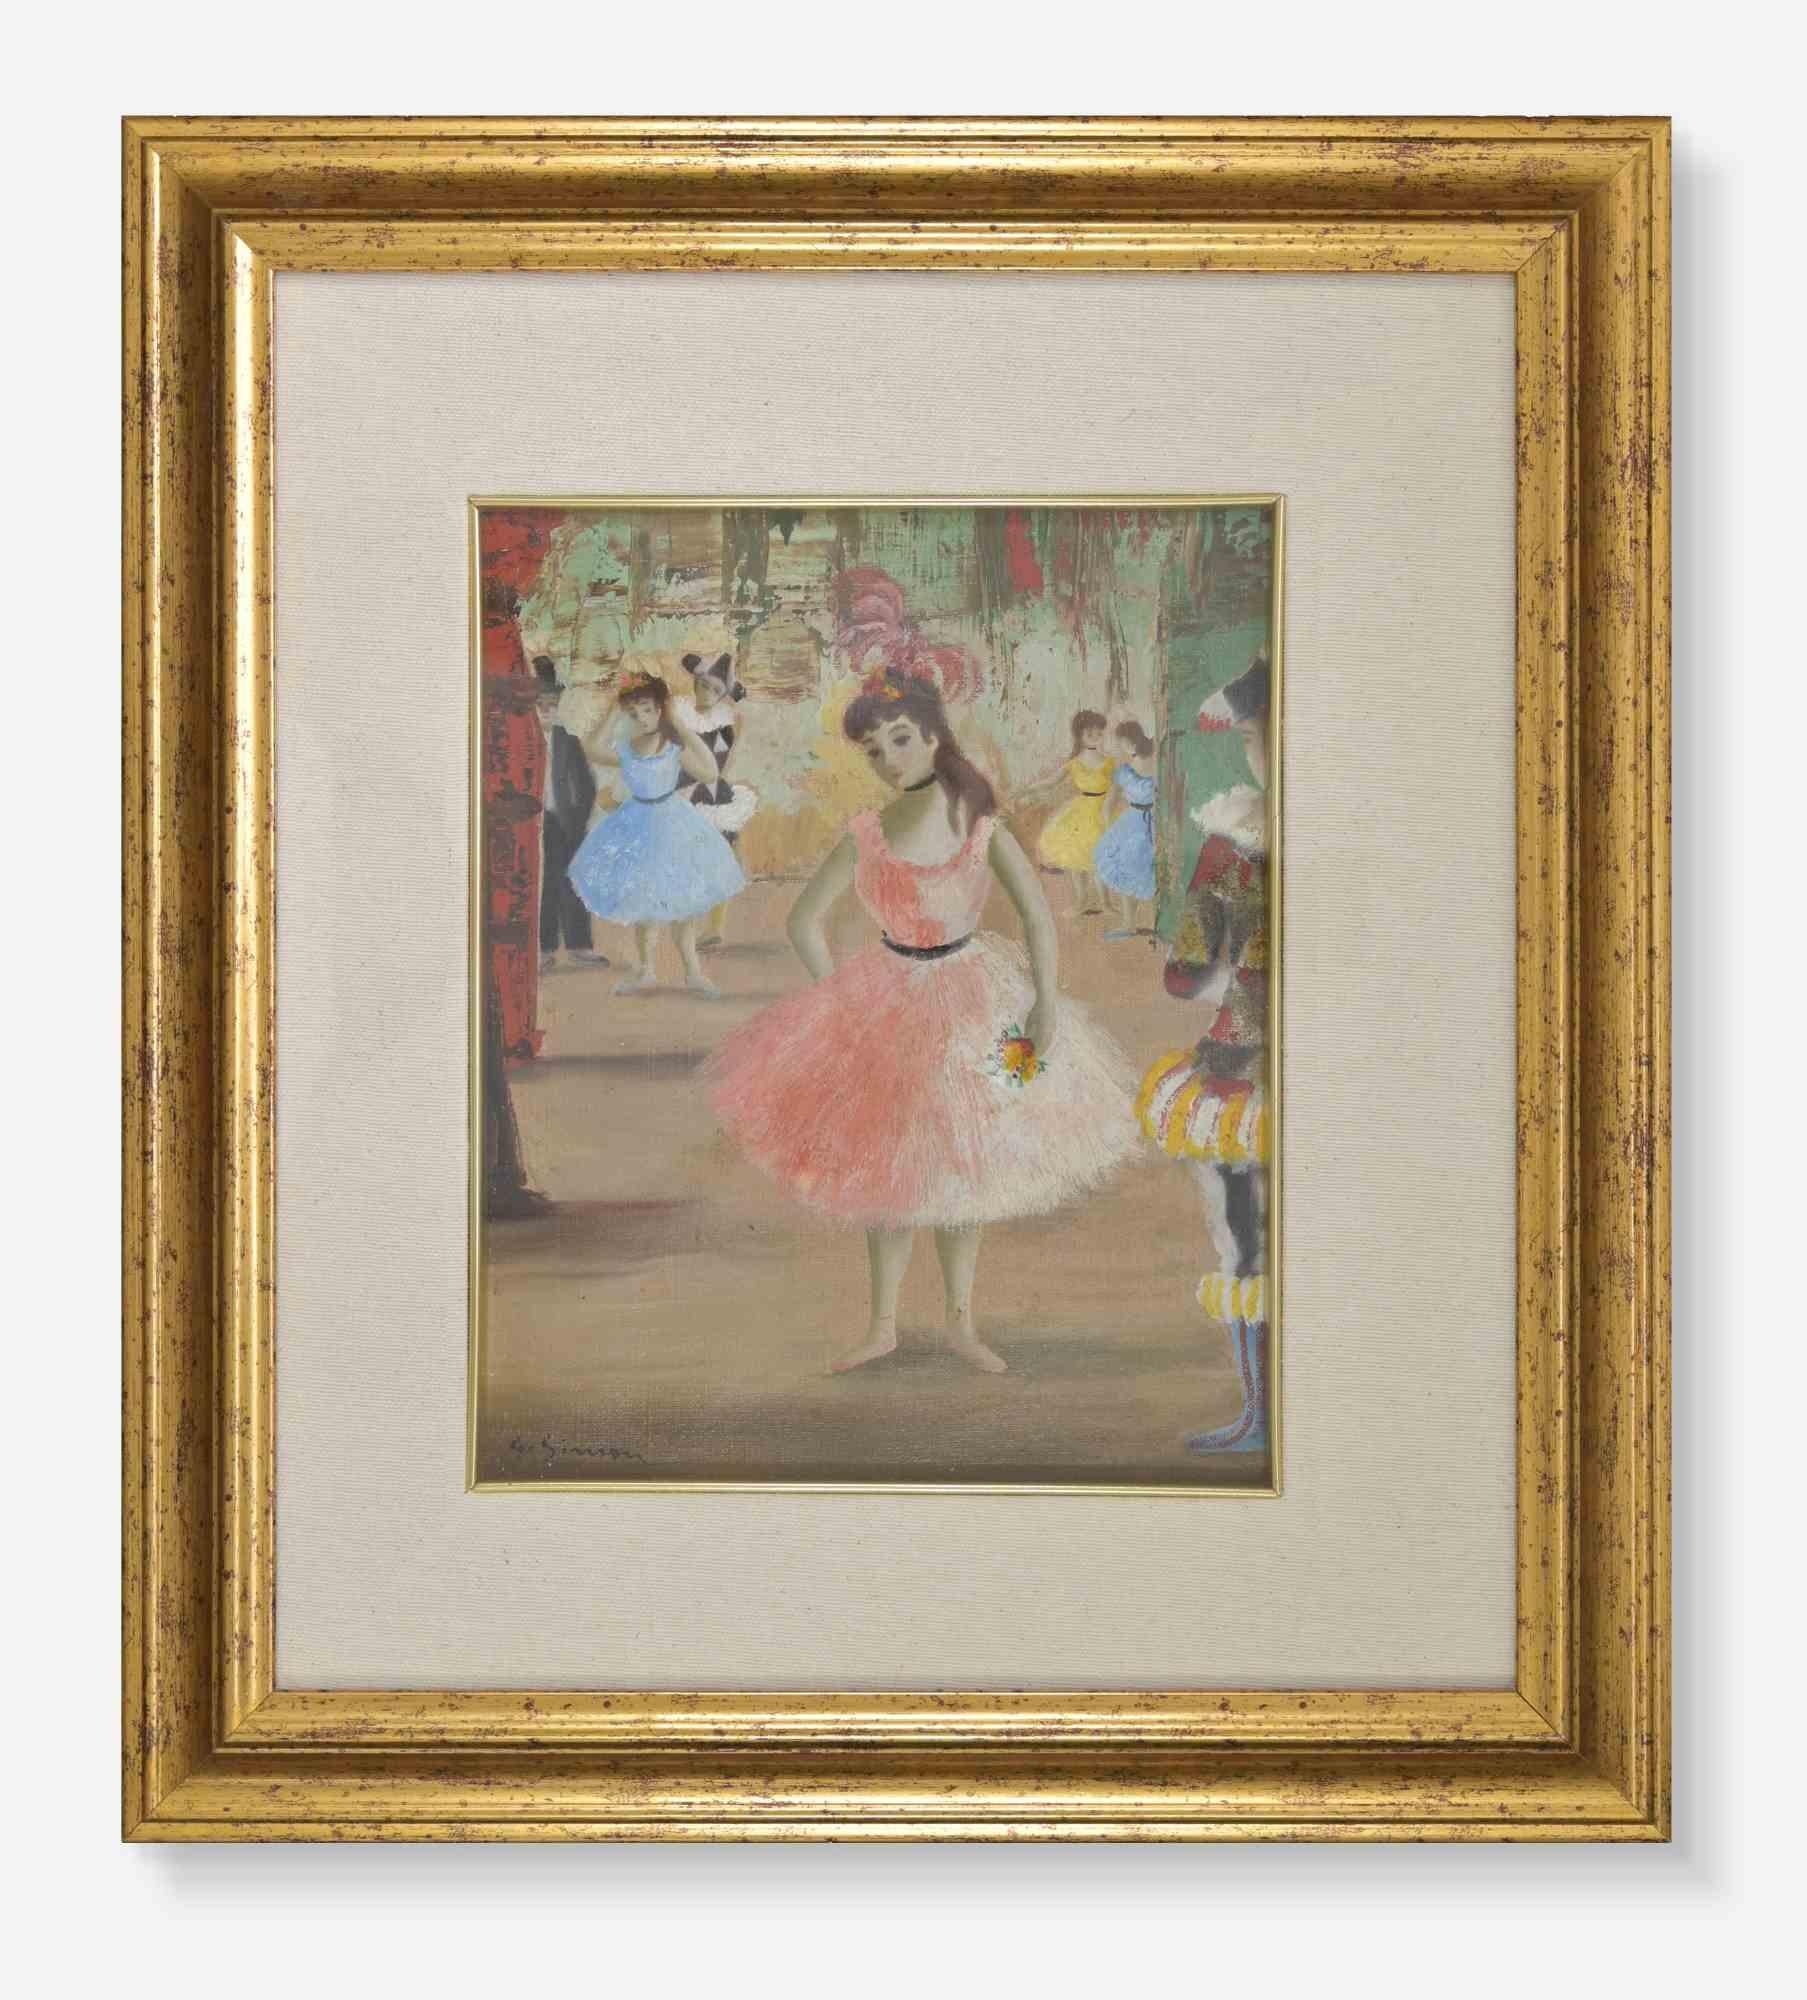 Danseuse au théâtre est une œuvre d'art réalisée par Simon Georgette au début du 20e siècle. 

Huile sur toile, 40 x 43 cm avec cadre.

Bonnes conditions
